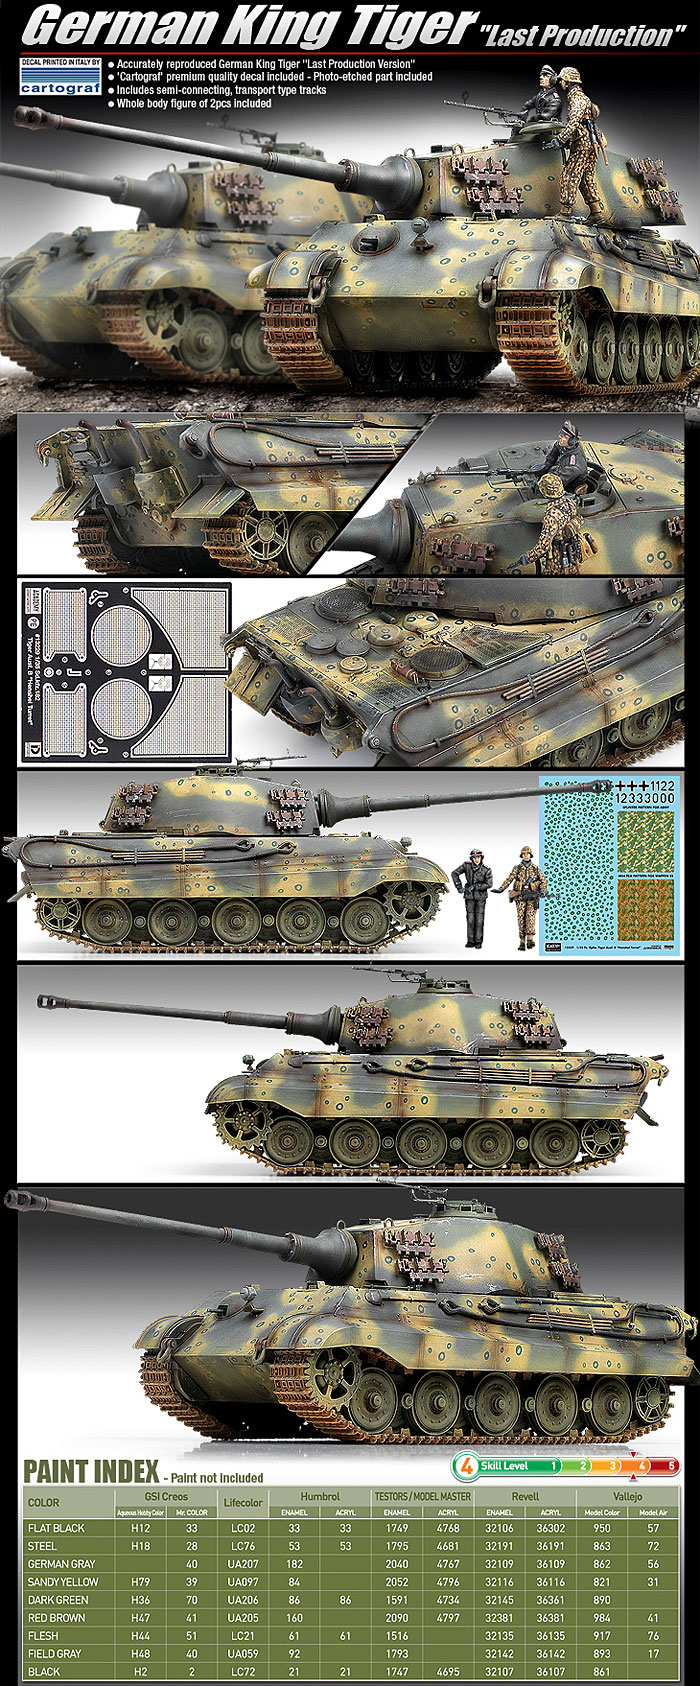 アカデミー 1/35 ドイツ重戦車 キングタイガー 最後期型 AM13229 プラモデル